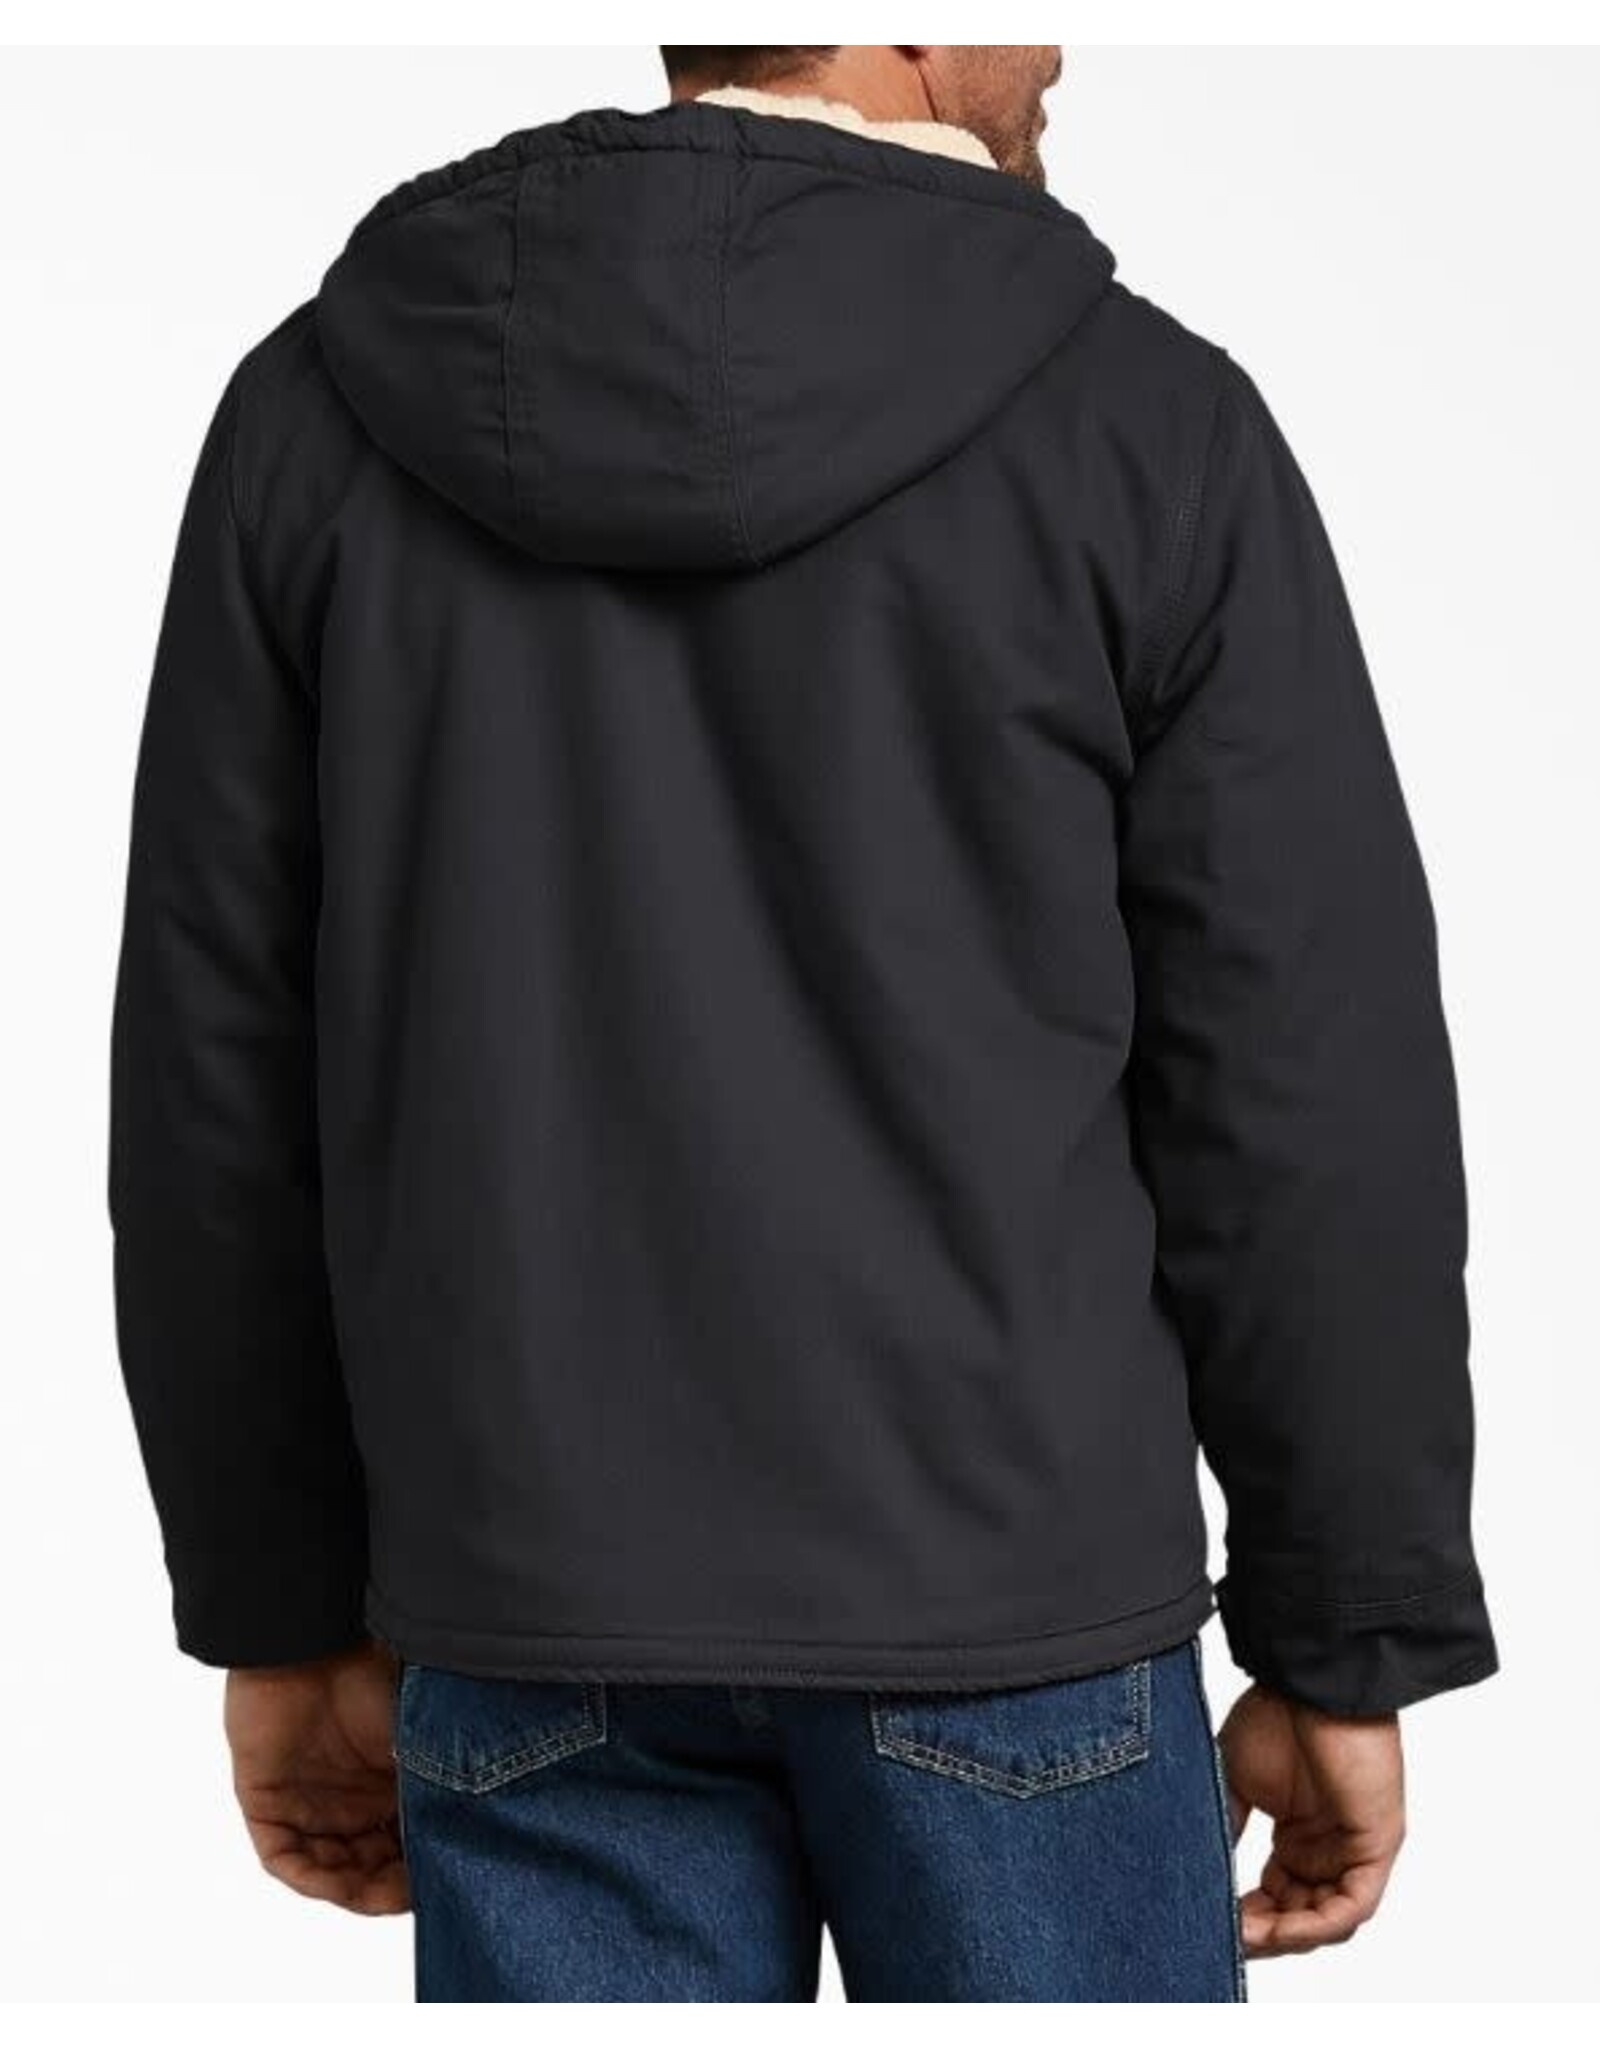 DICKIES Sherpa Lined Hooded Jacket Black - TJ350RBK